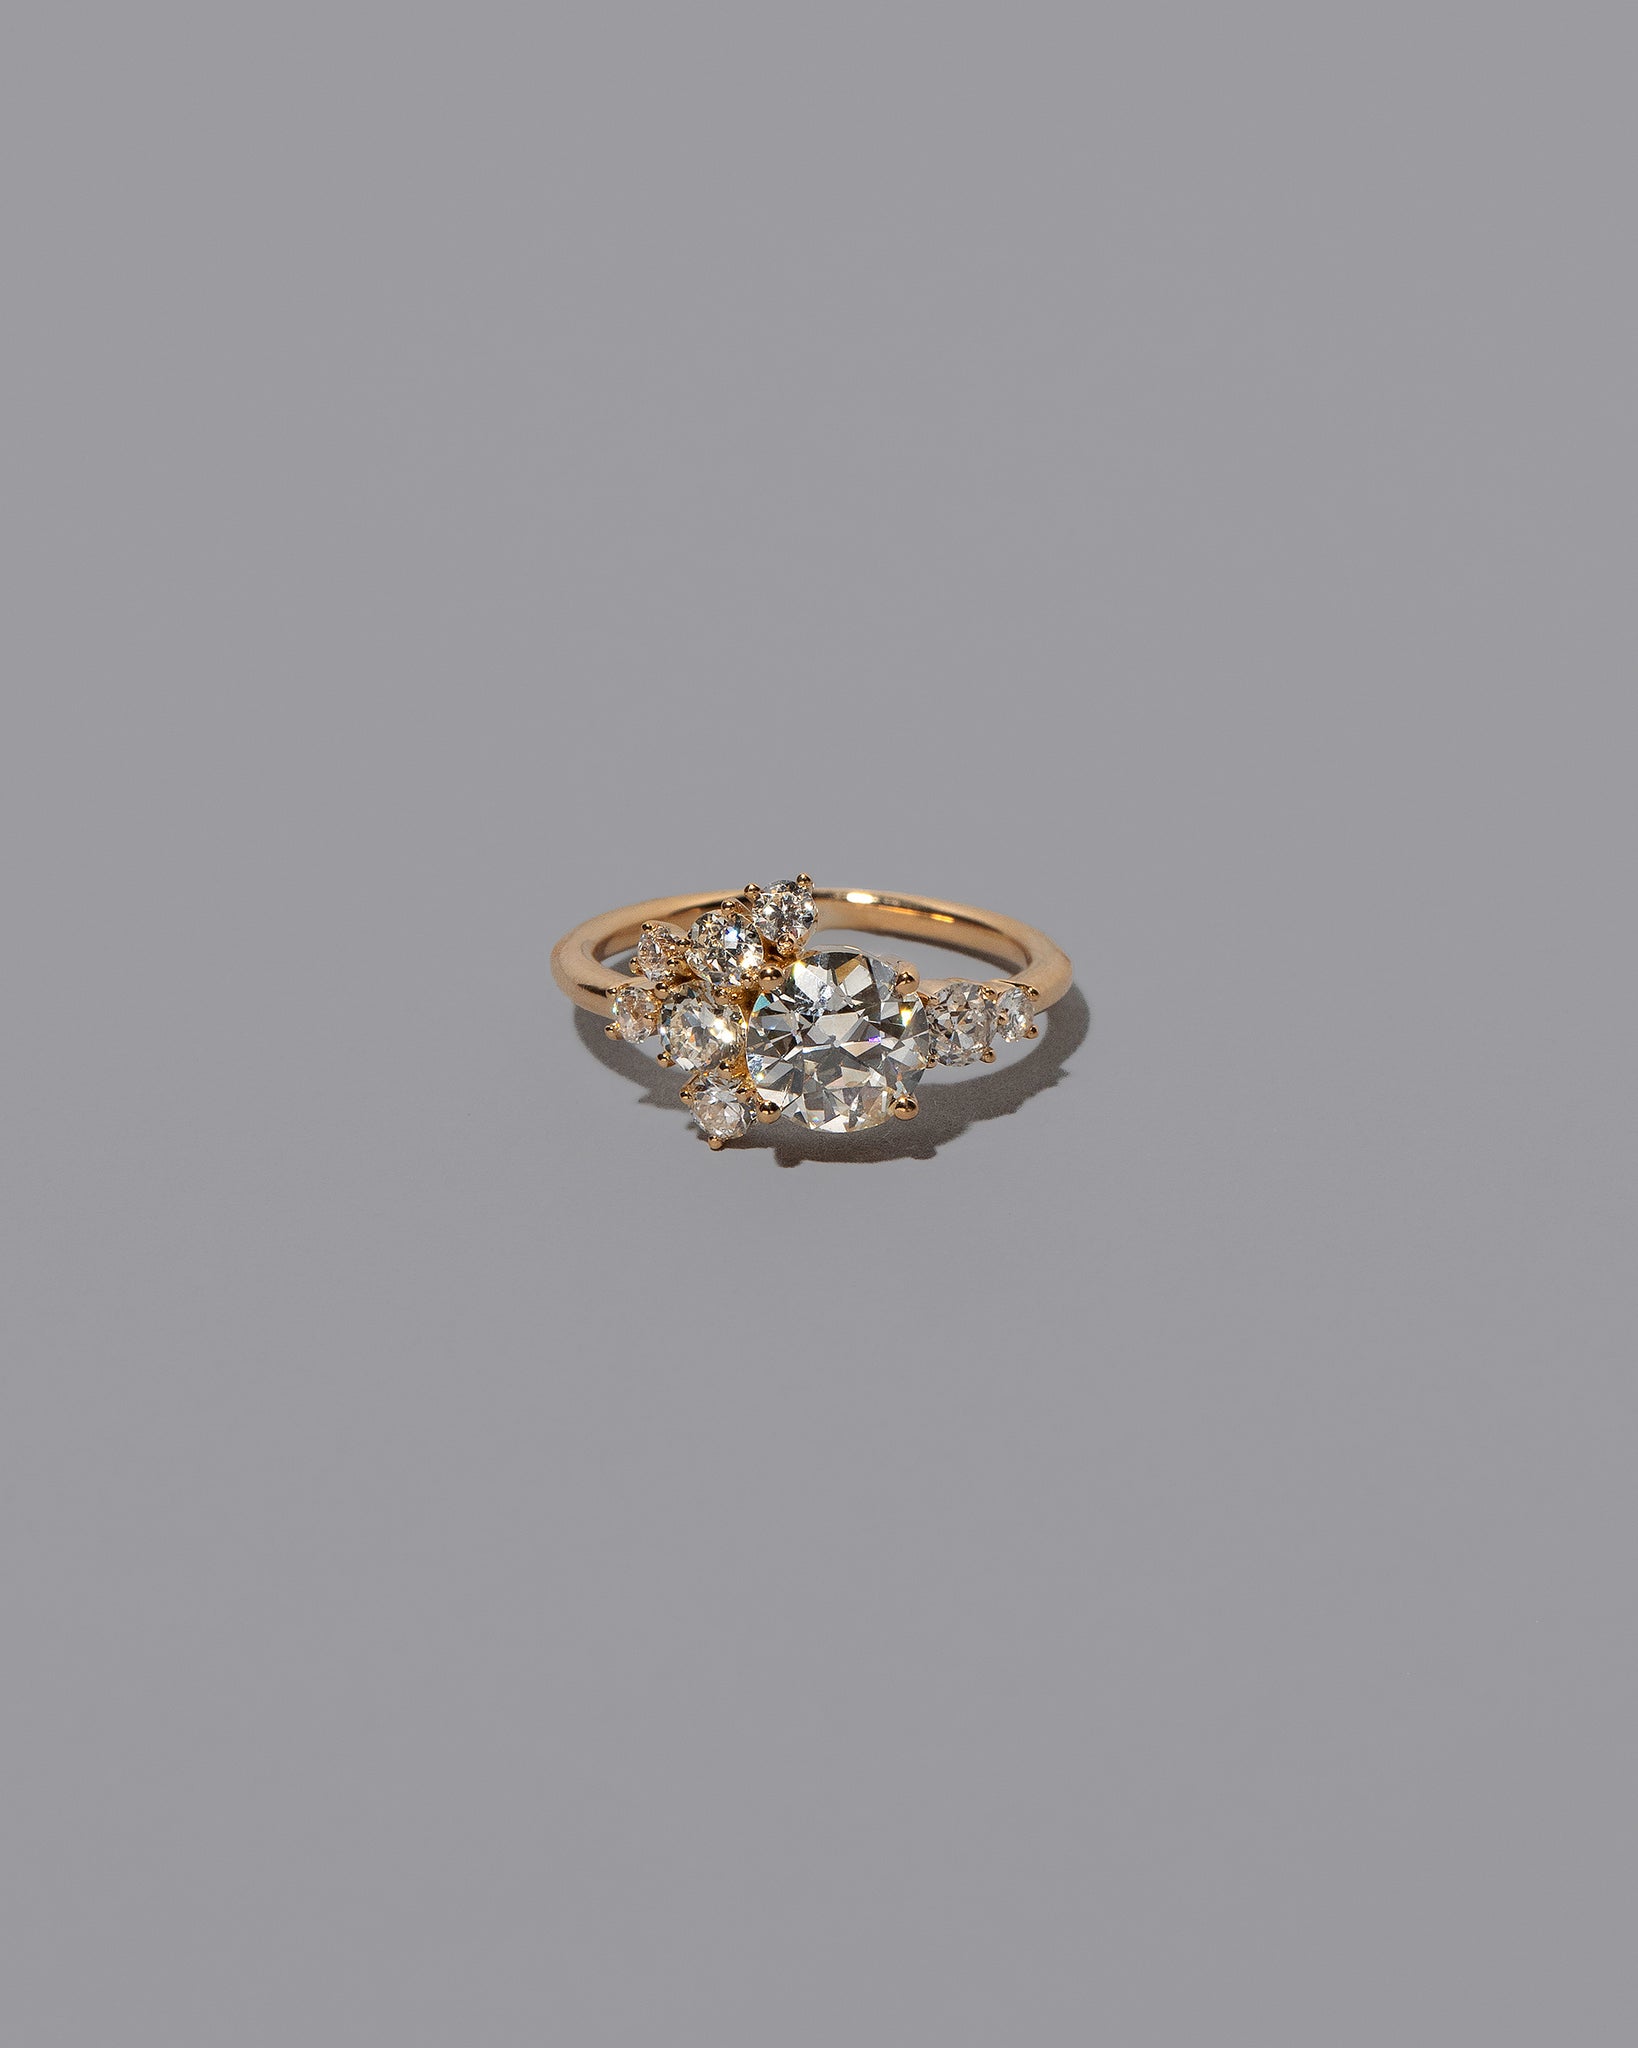 Mega White Diamond Vega Ring on light color background.